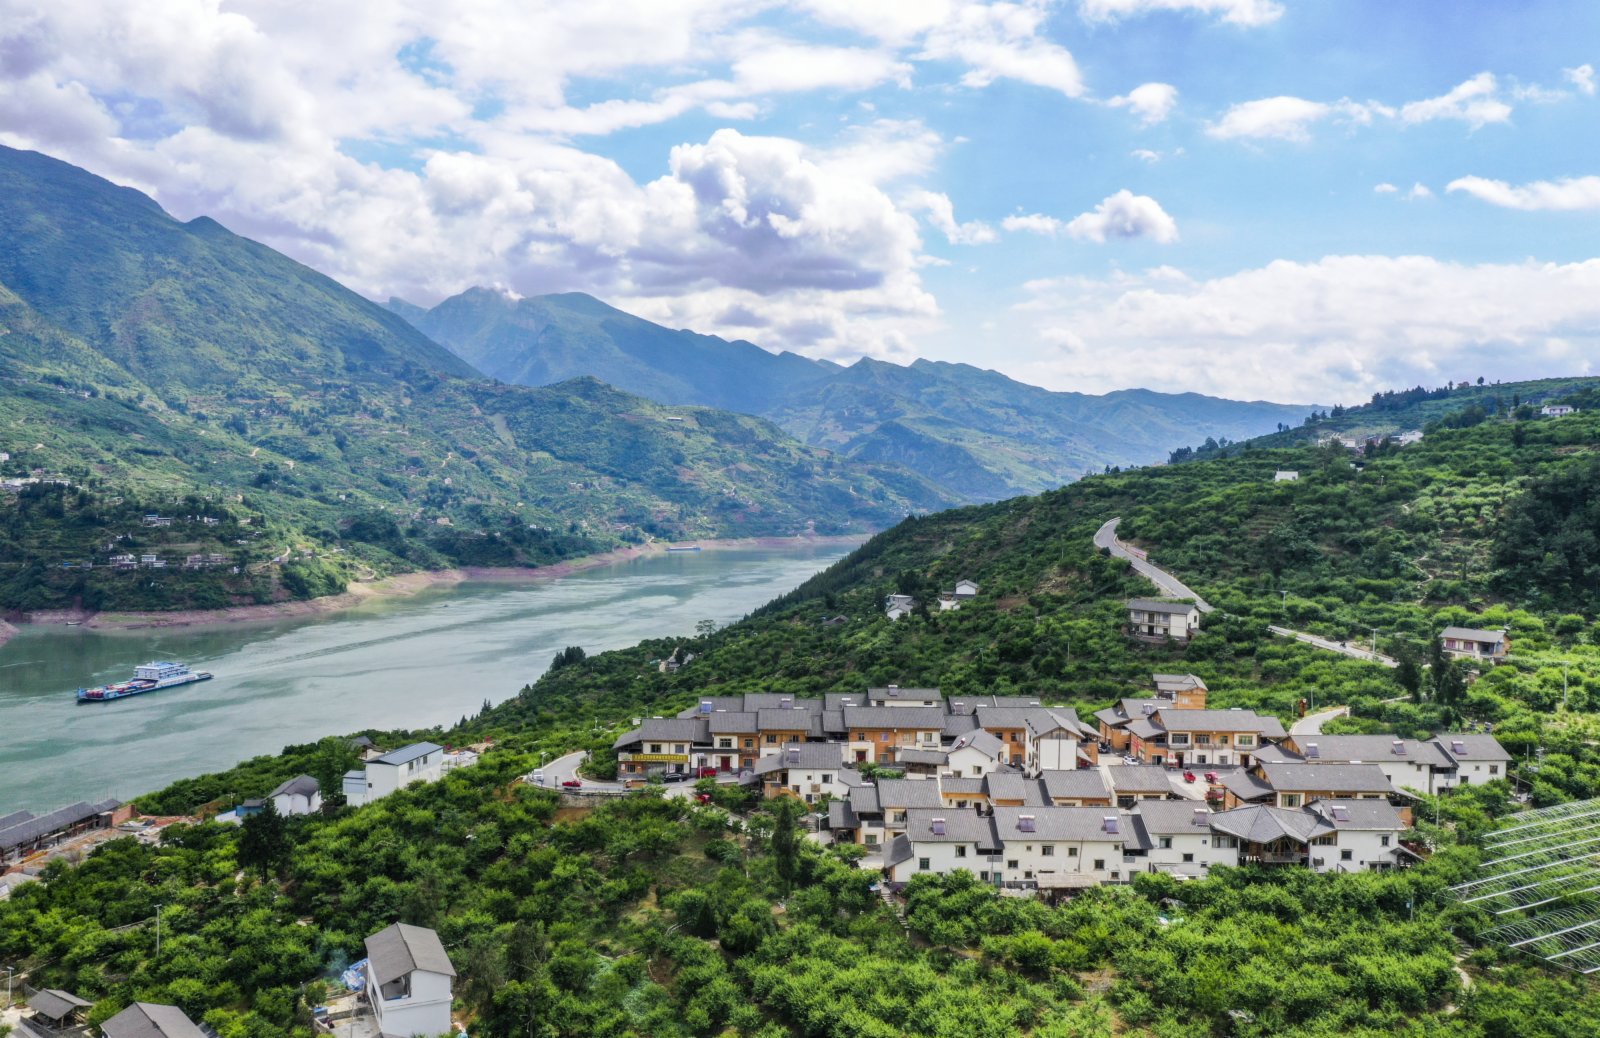 這是5月19日拍攝的長江巫山段曲尺鄉一帶景象（無人機照片）。